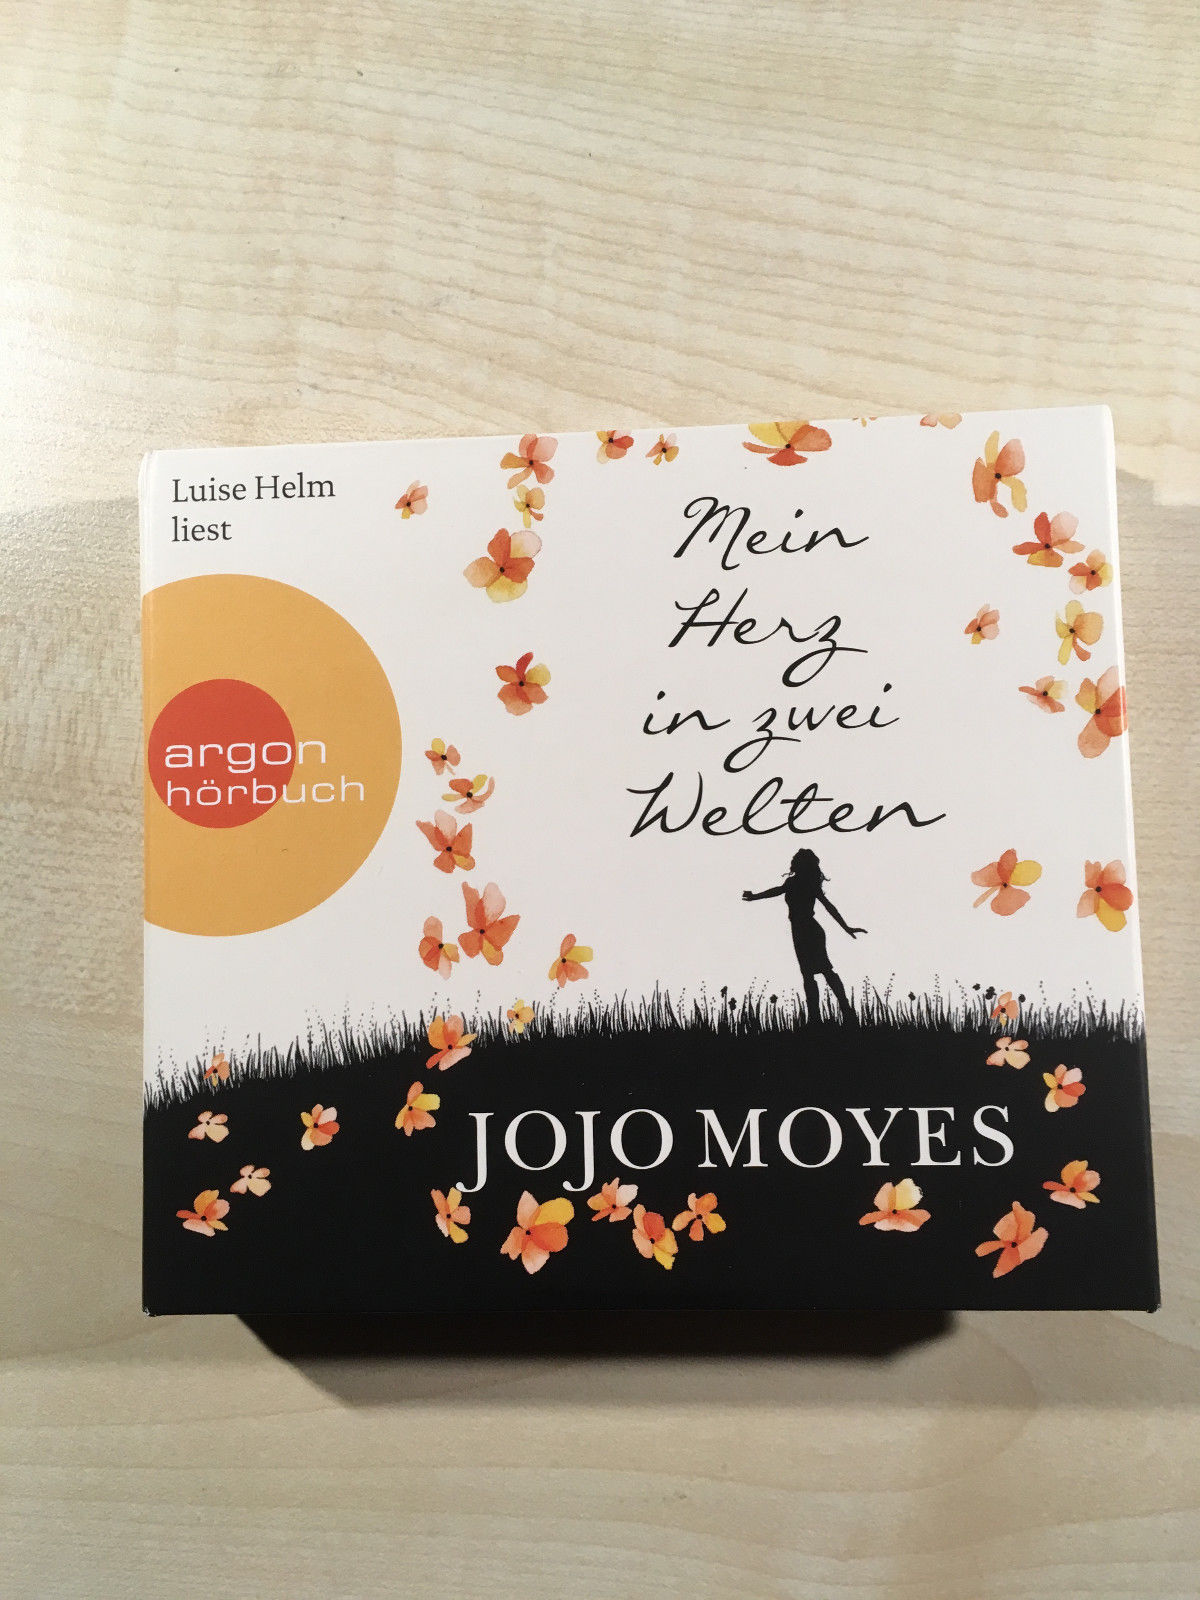 Mein Herz in zwei Welten - Jojo Moyes - 8 CD wie neu - Topp!!!!